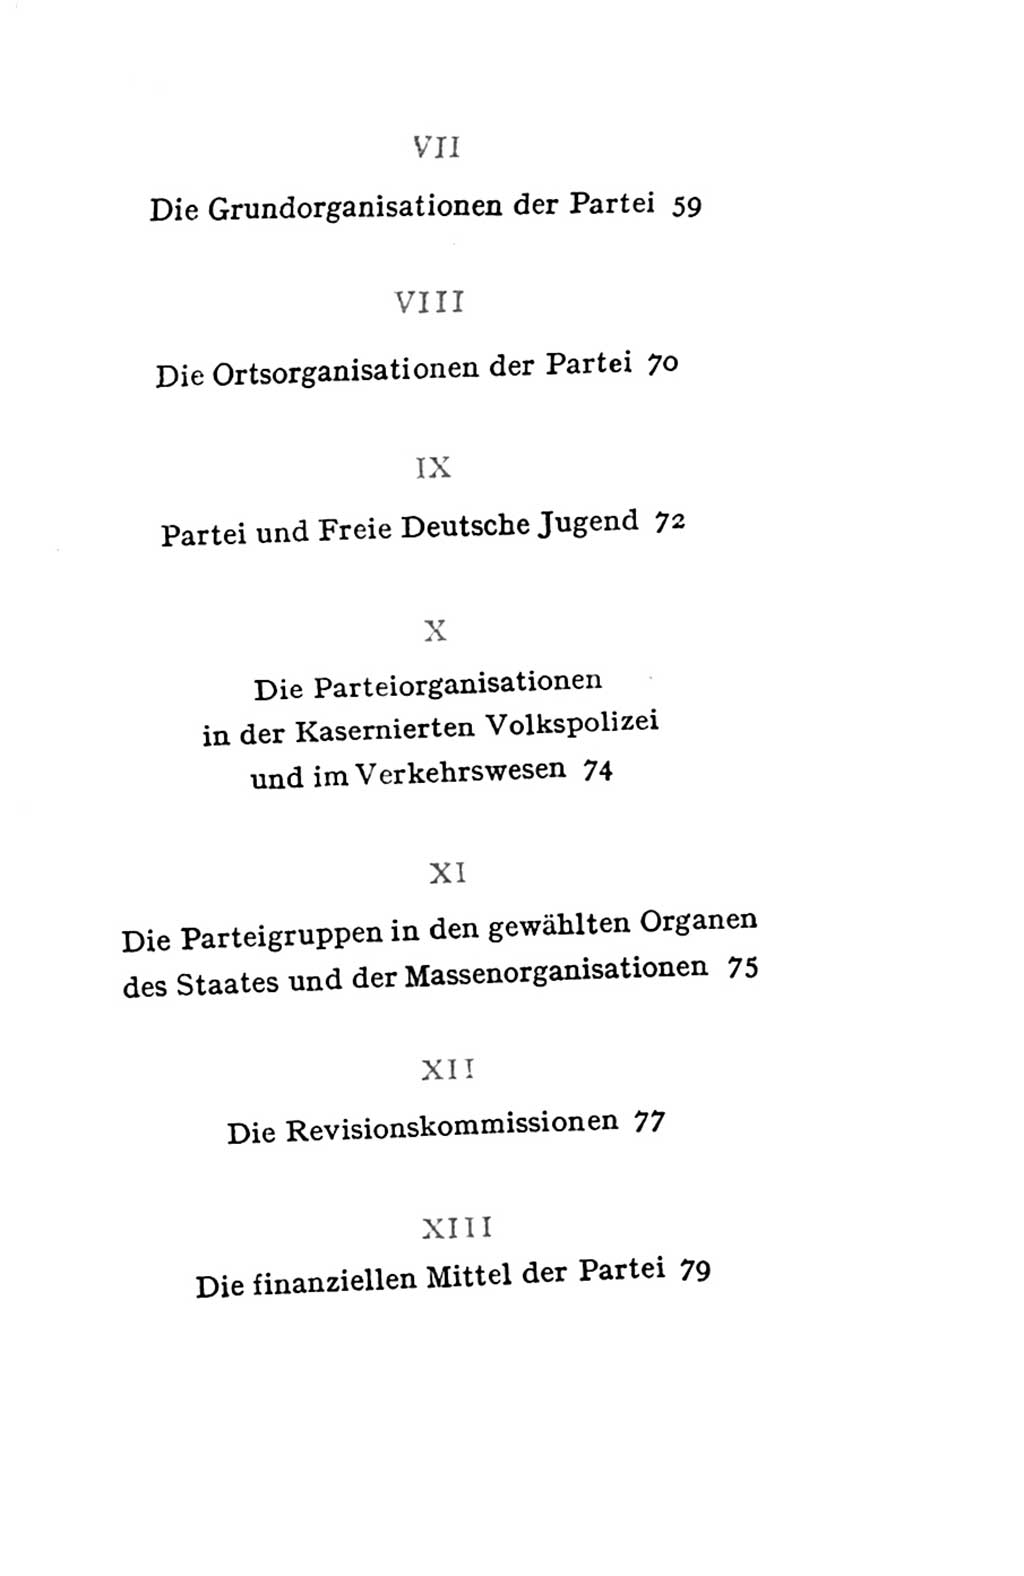 Statut der Sozialistischen Einheitspartei Deutschlands (SED) 1954, Seite 83